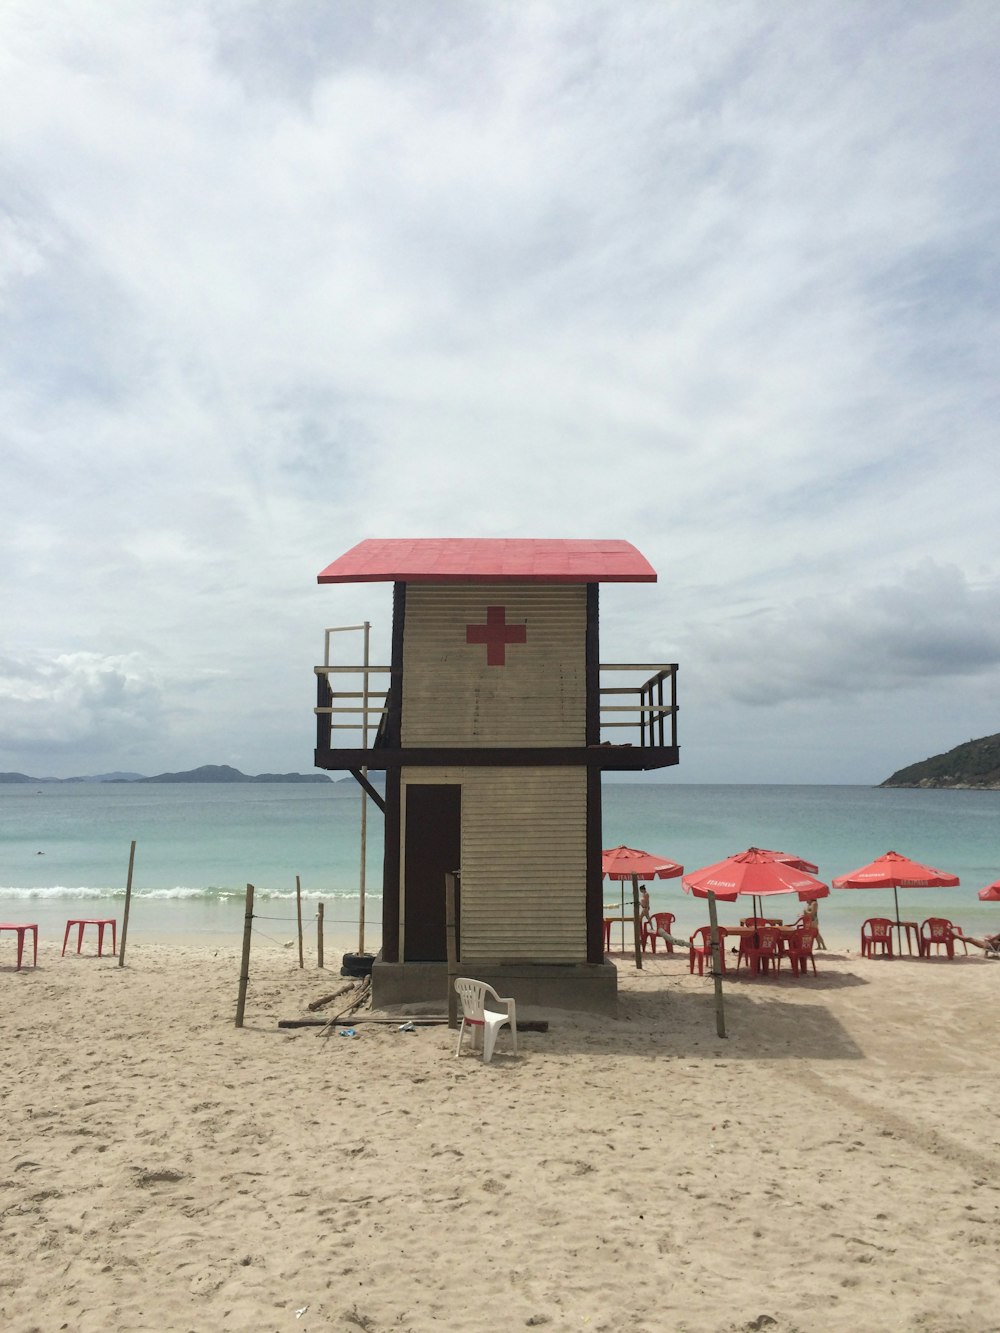 Casa de salvavidas blanca y roja cerca de sillas de playa rojas bajo cielos blancos